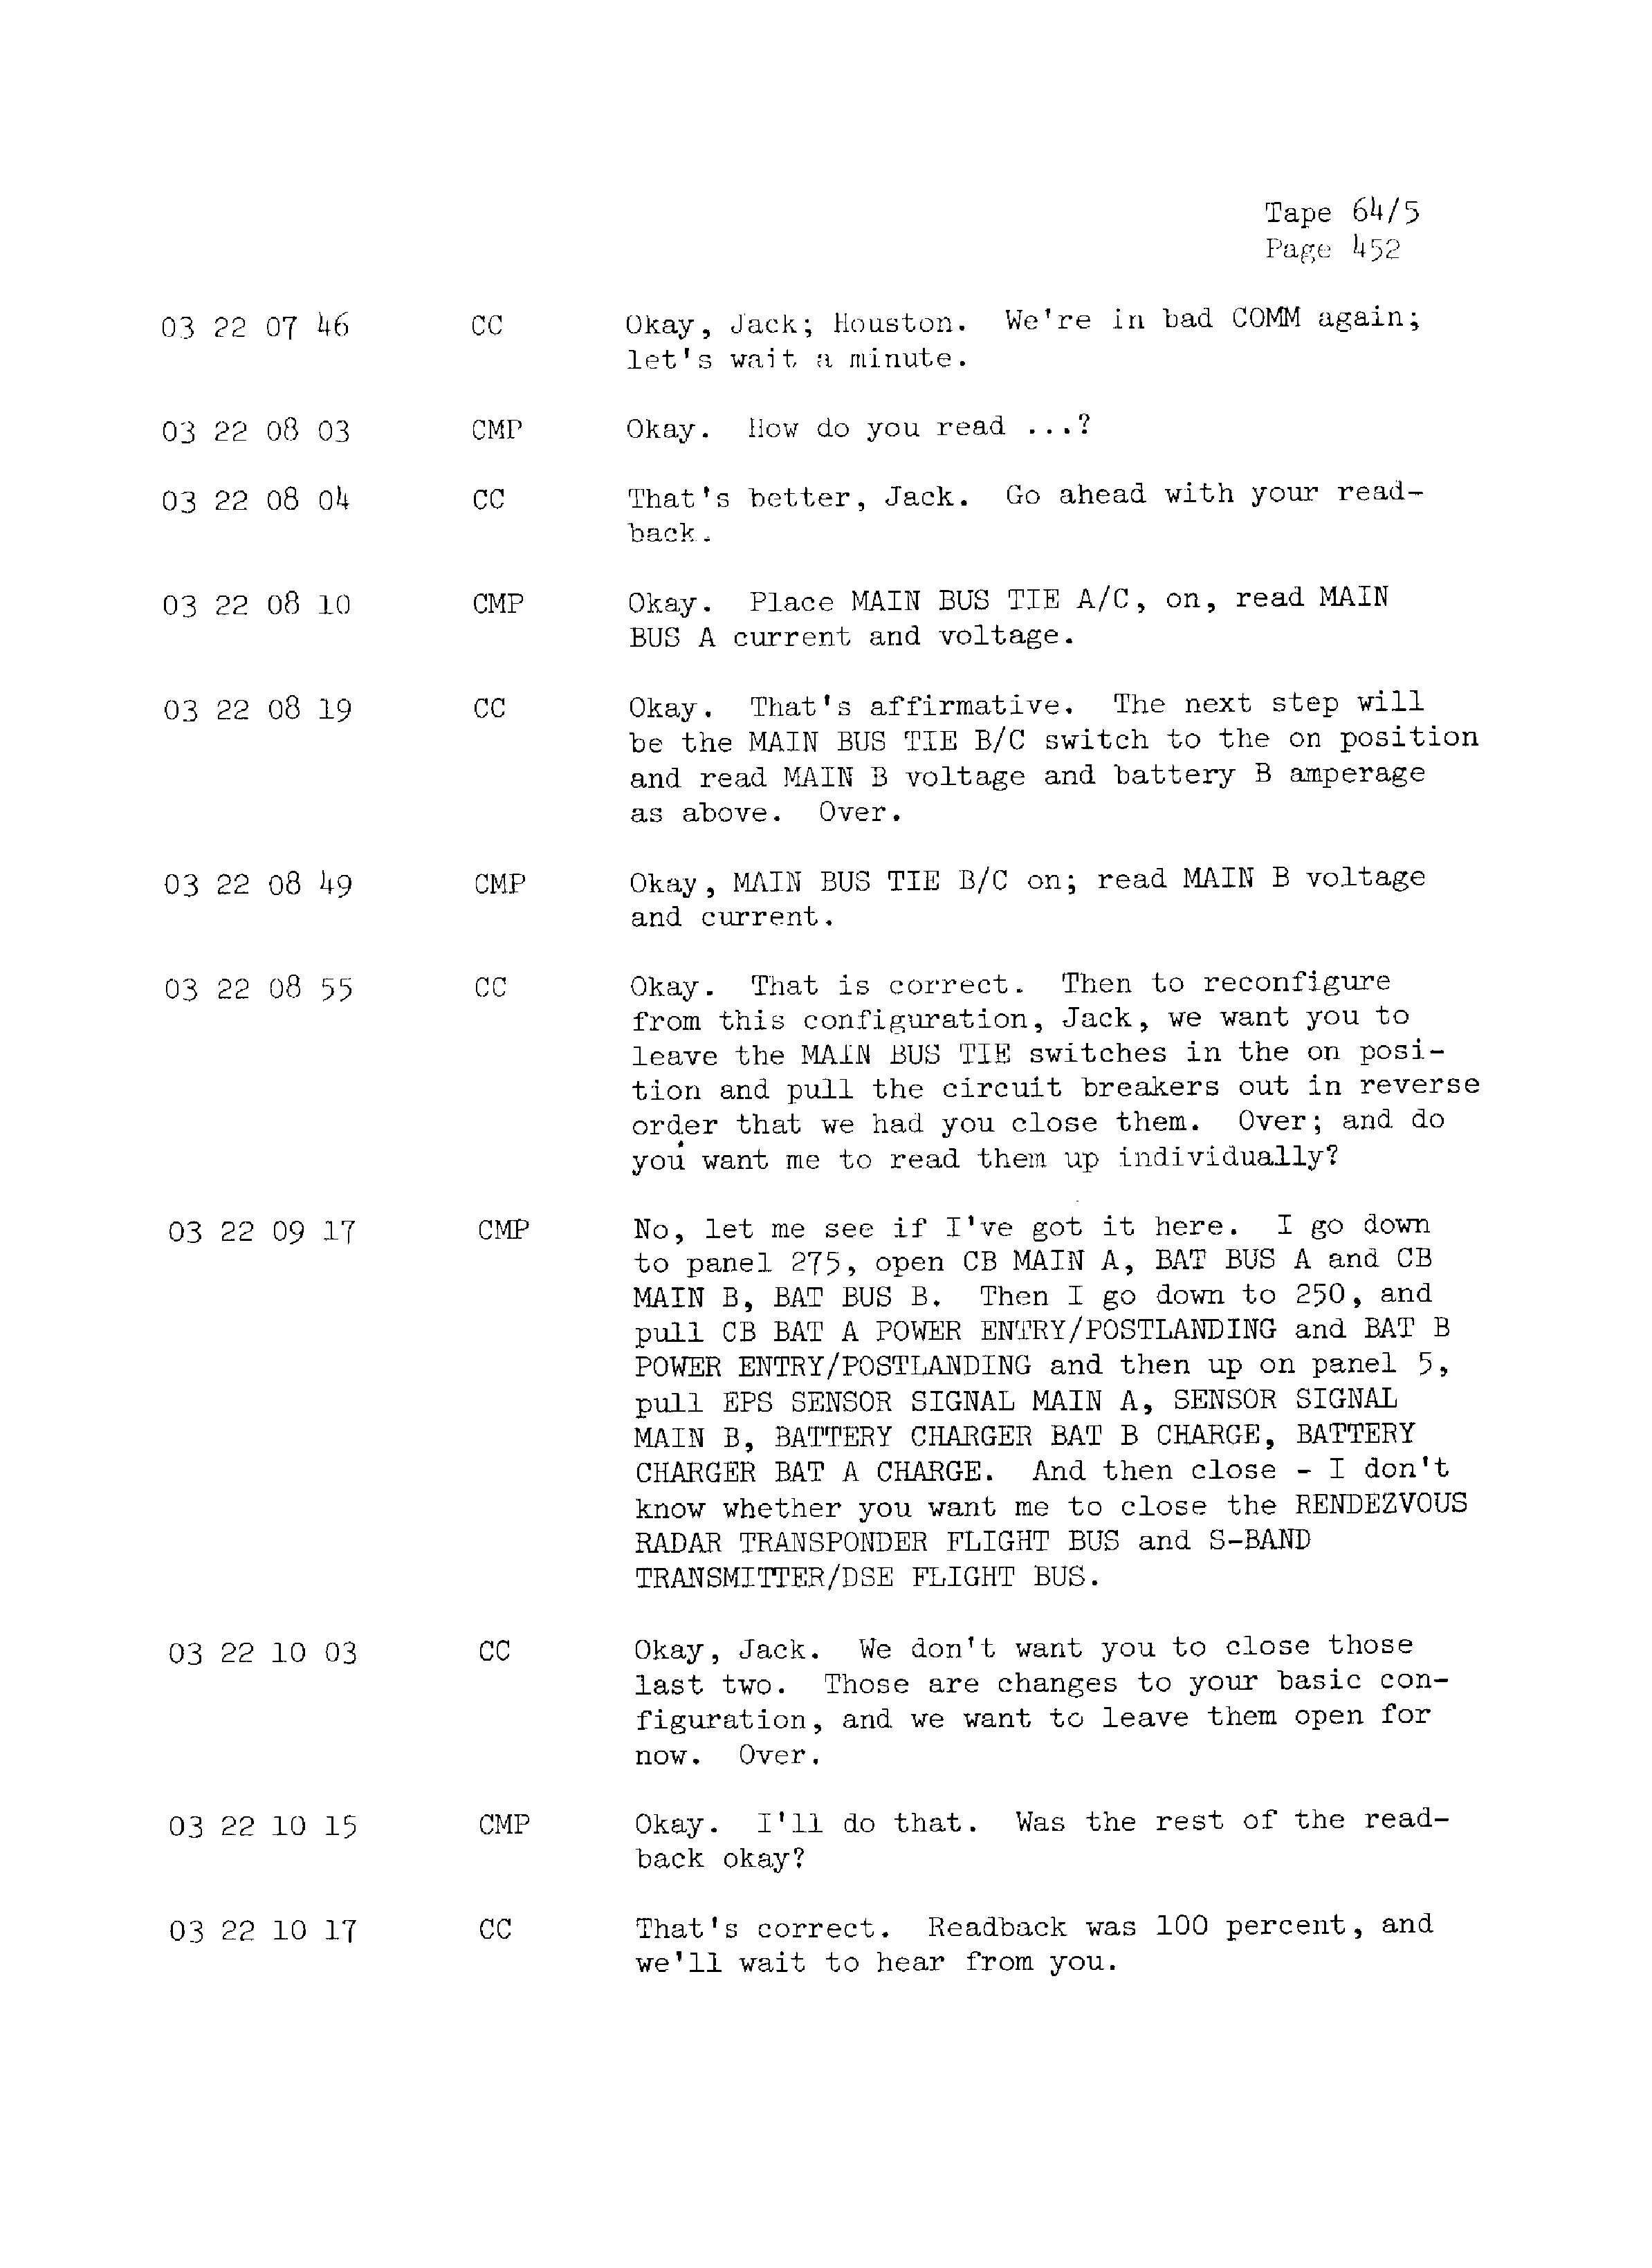 Page 459 of Apollo 13’s original transcript